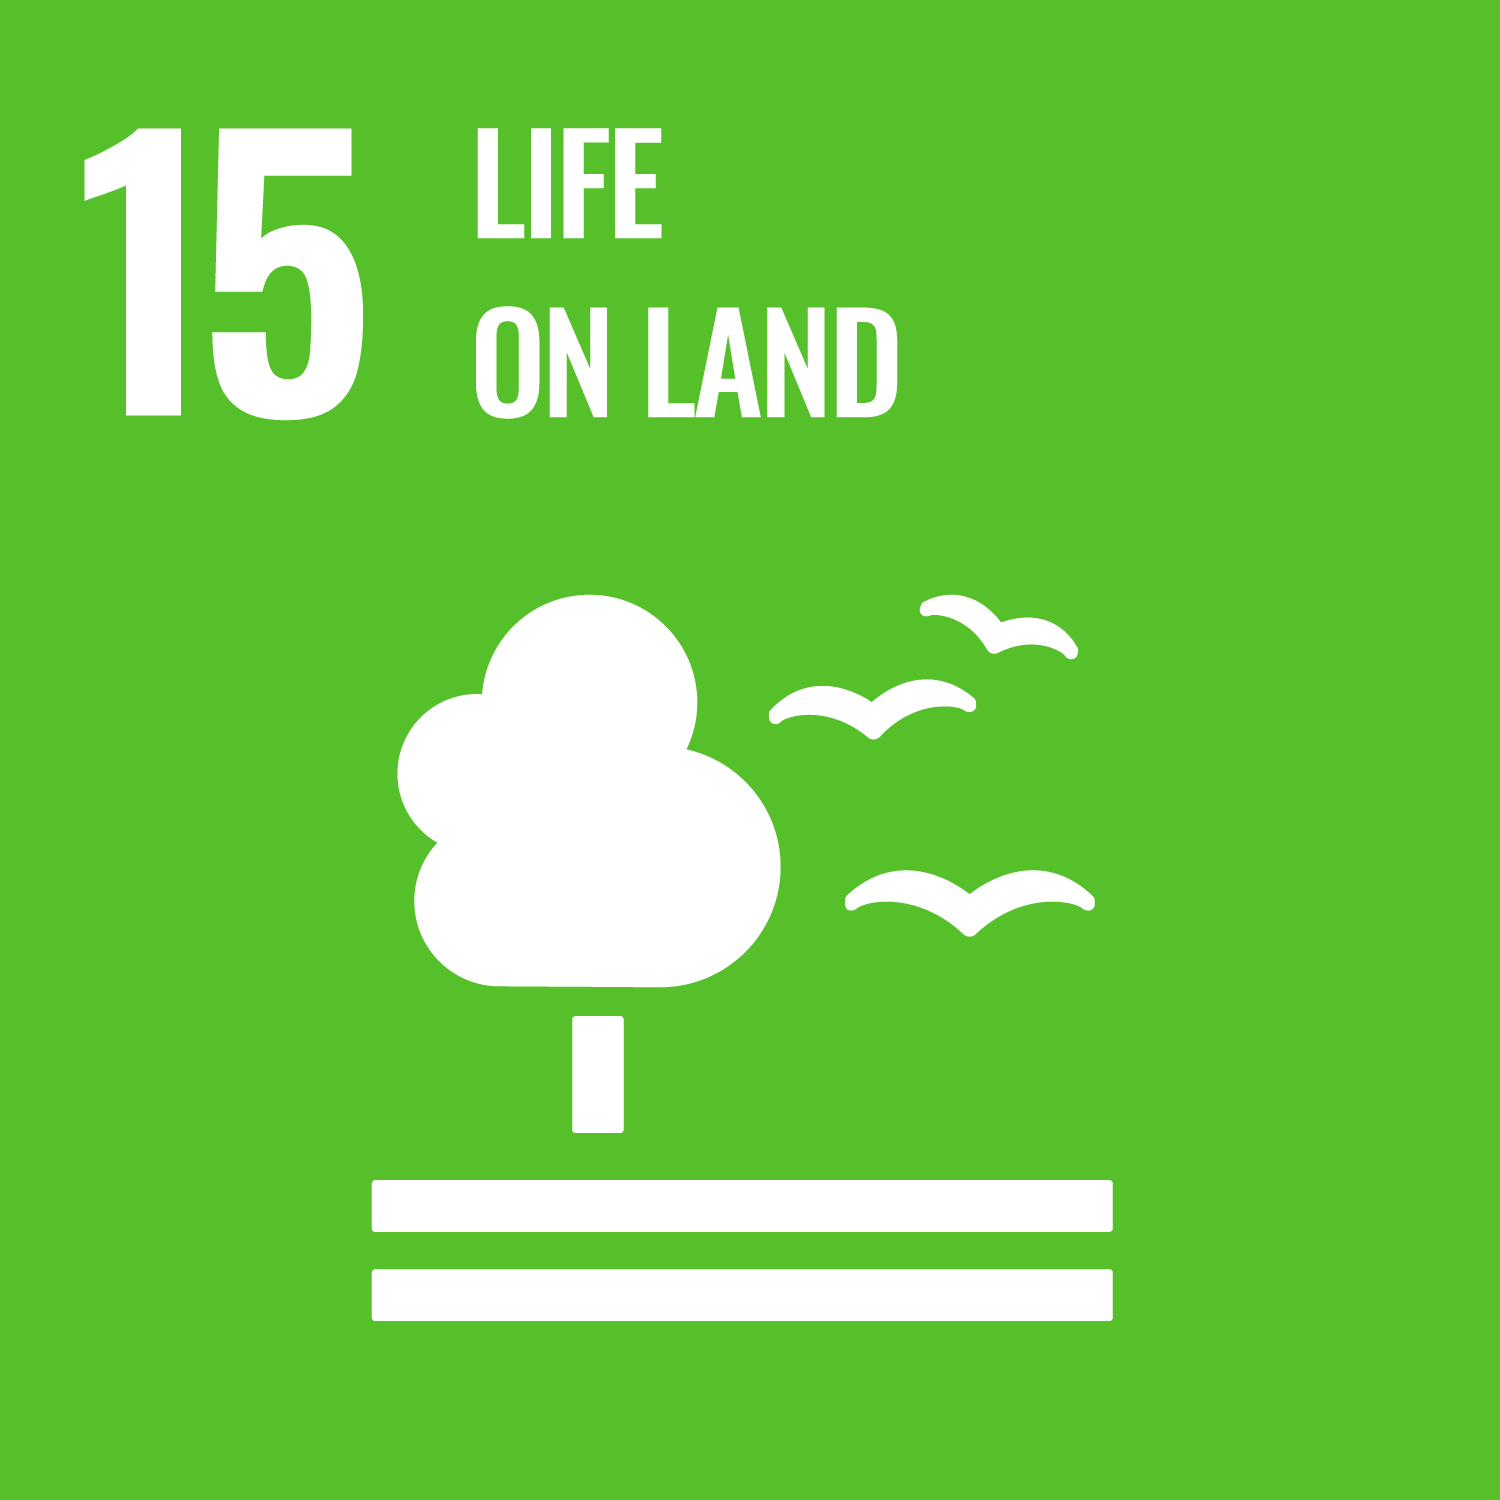 life on land sustainable development goal - tea leaf